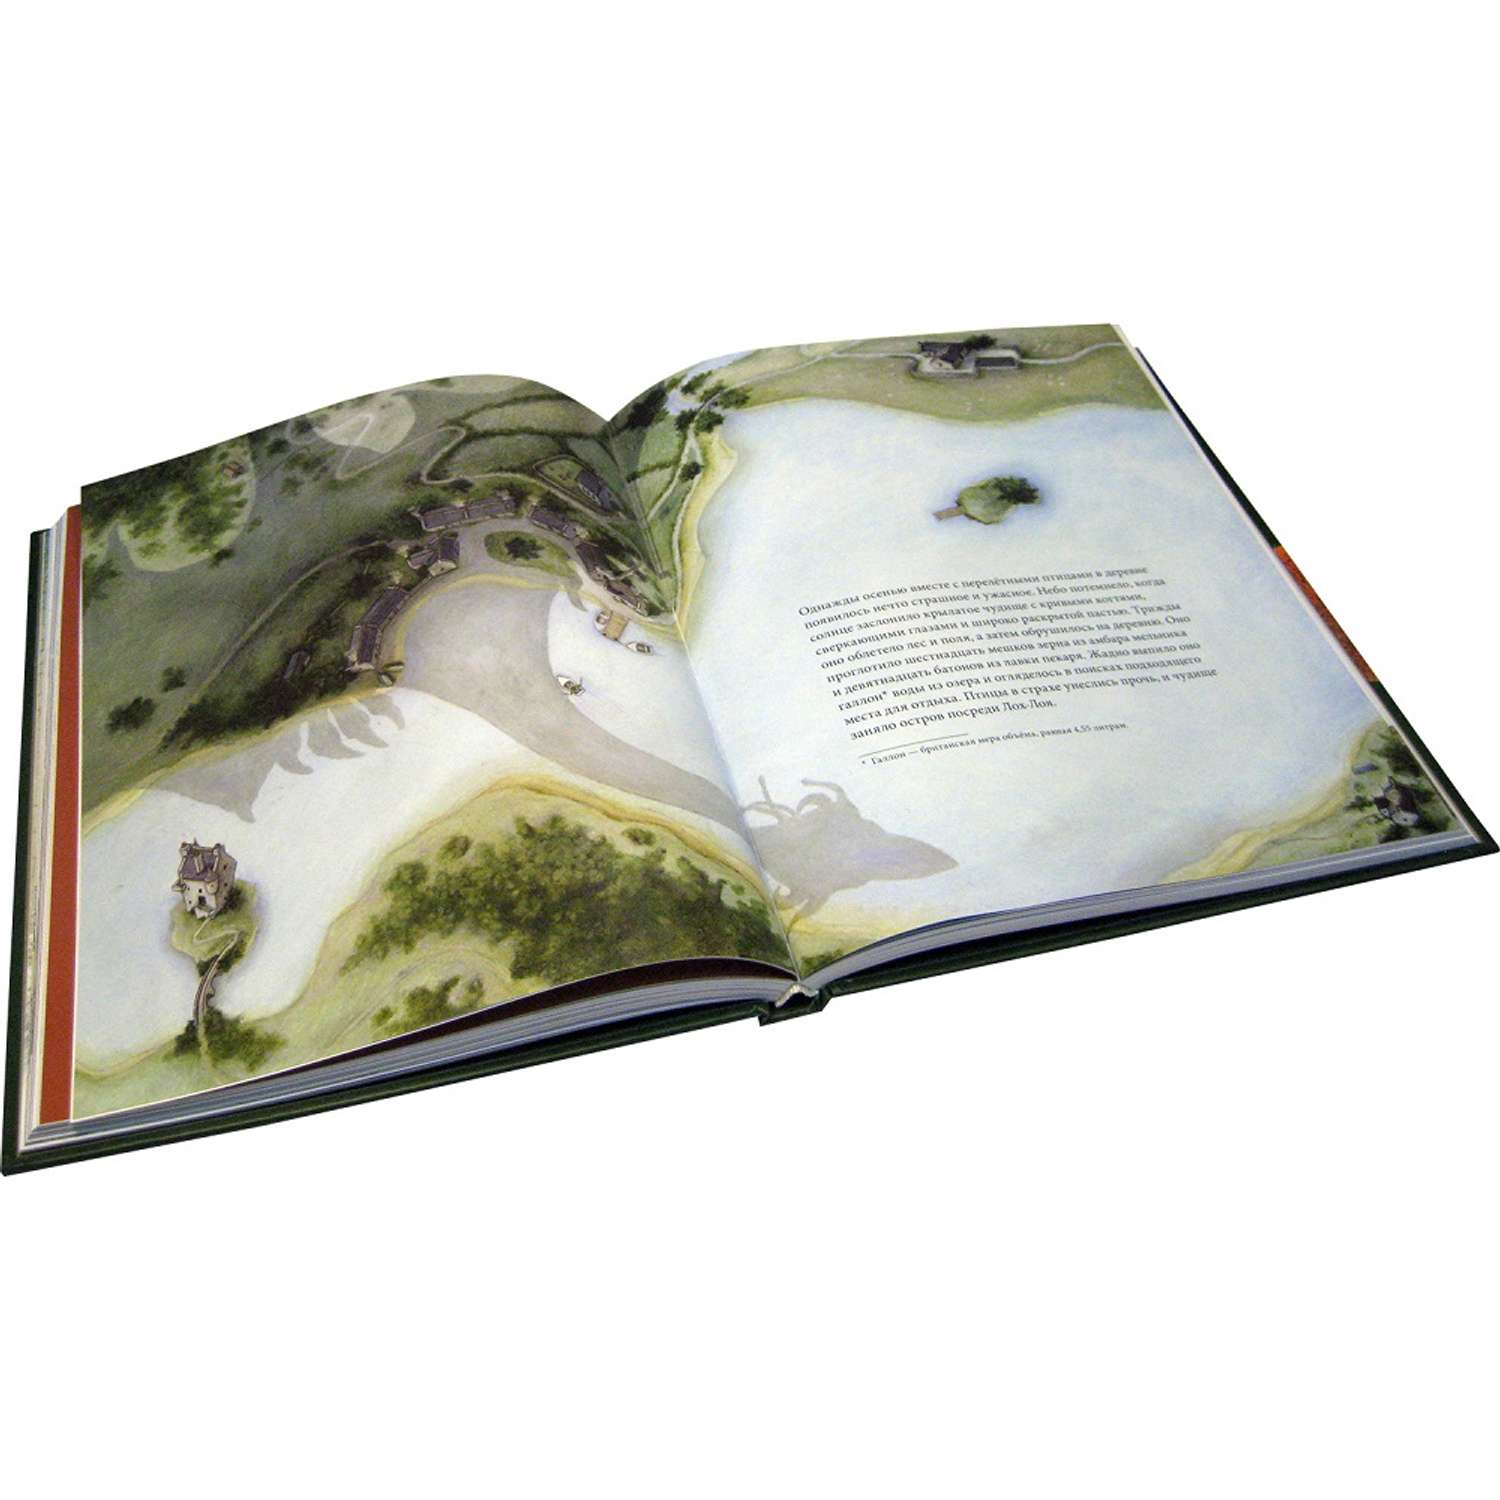 Бреслин Тереза Добрая книга Сказочные существа Шотландии Книга 2 иллюстратор Кейт Липер - фото 3